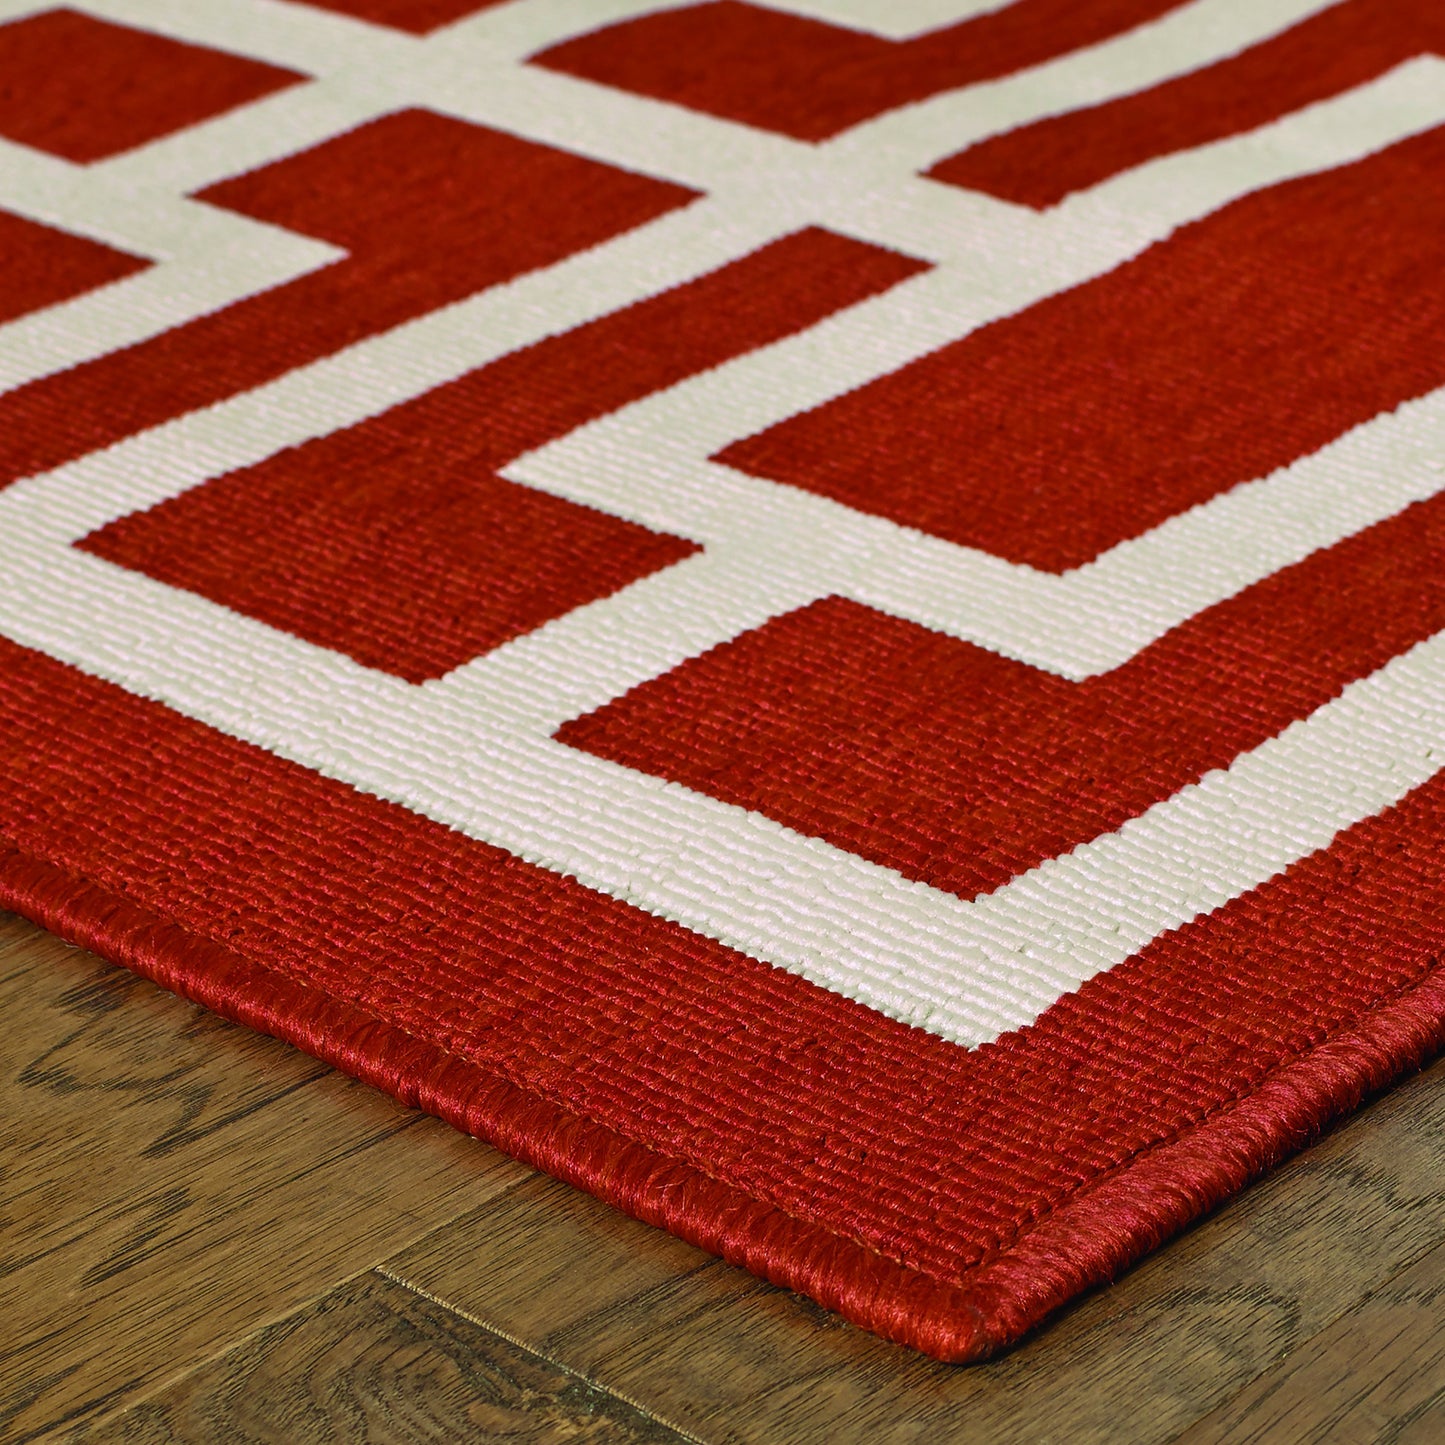 MERIDIAN 9754R Red, Ivory Rug - Oriental Weavers